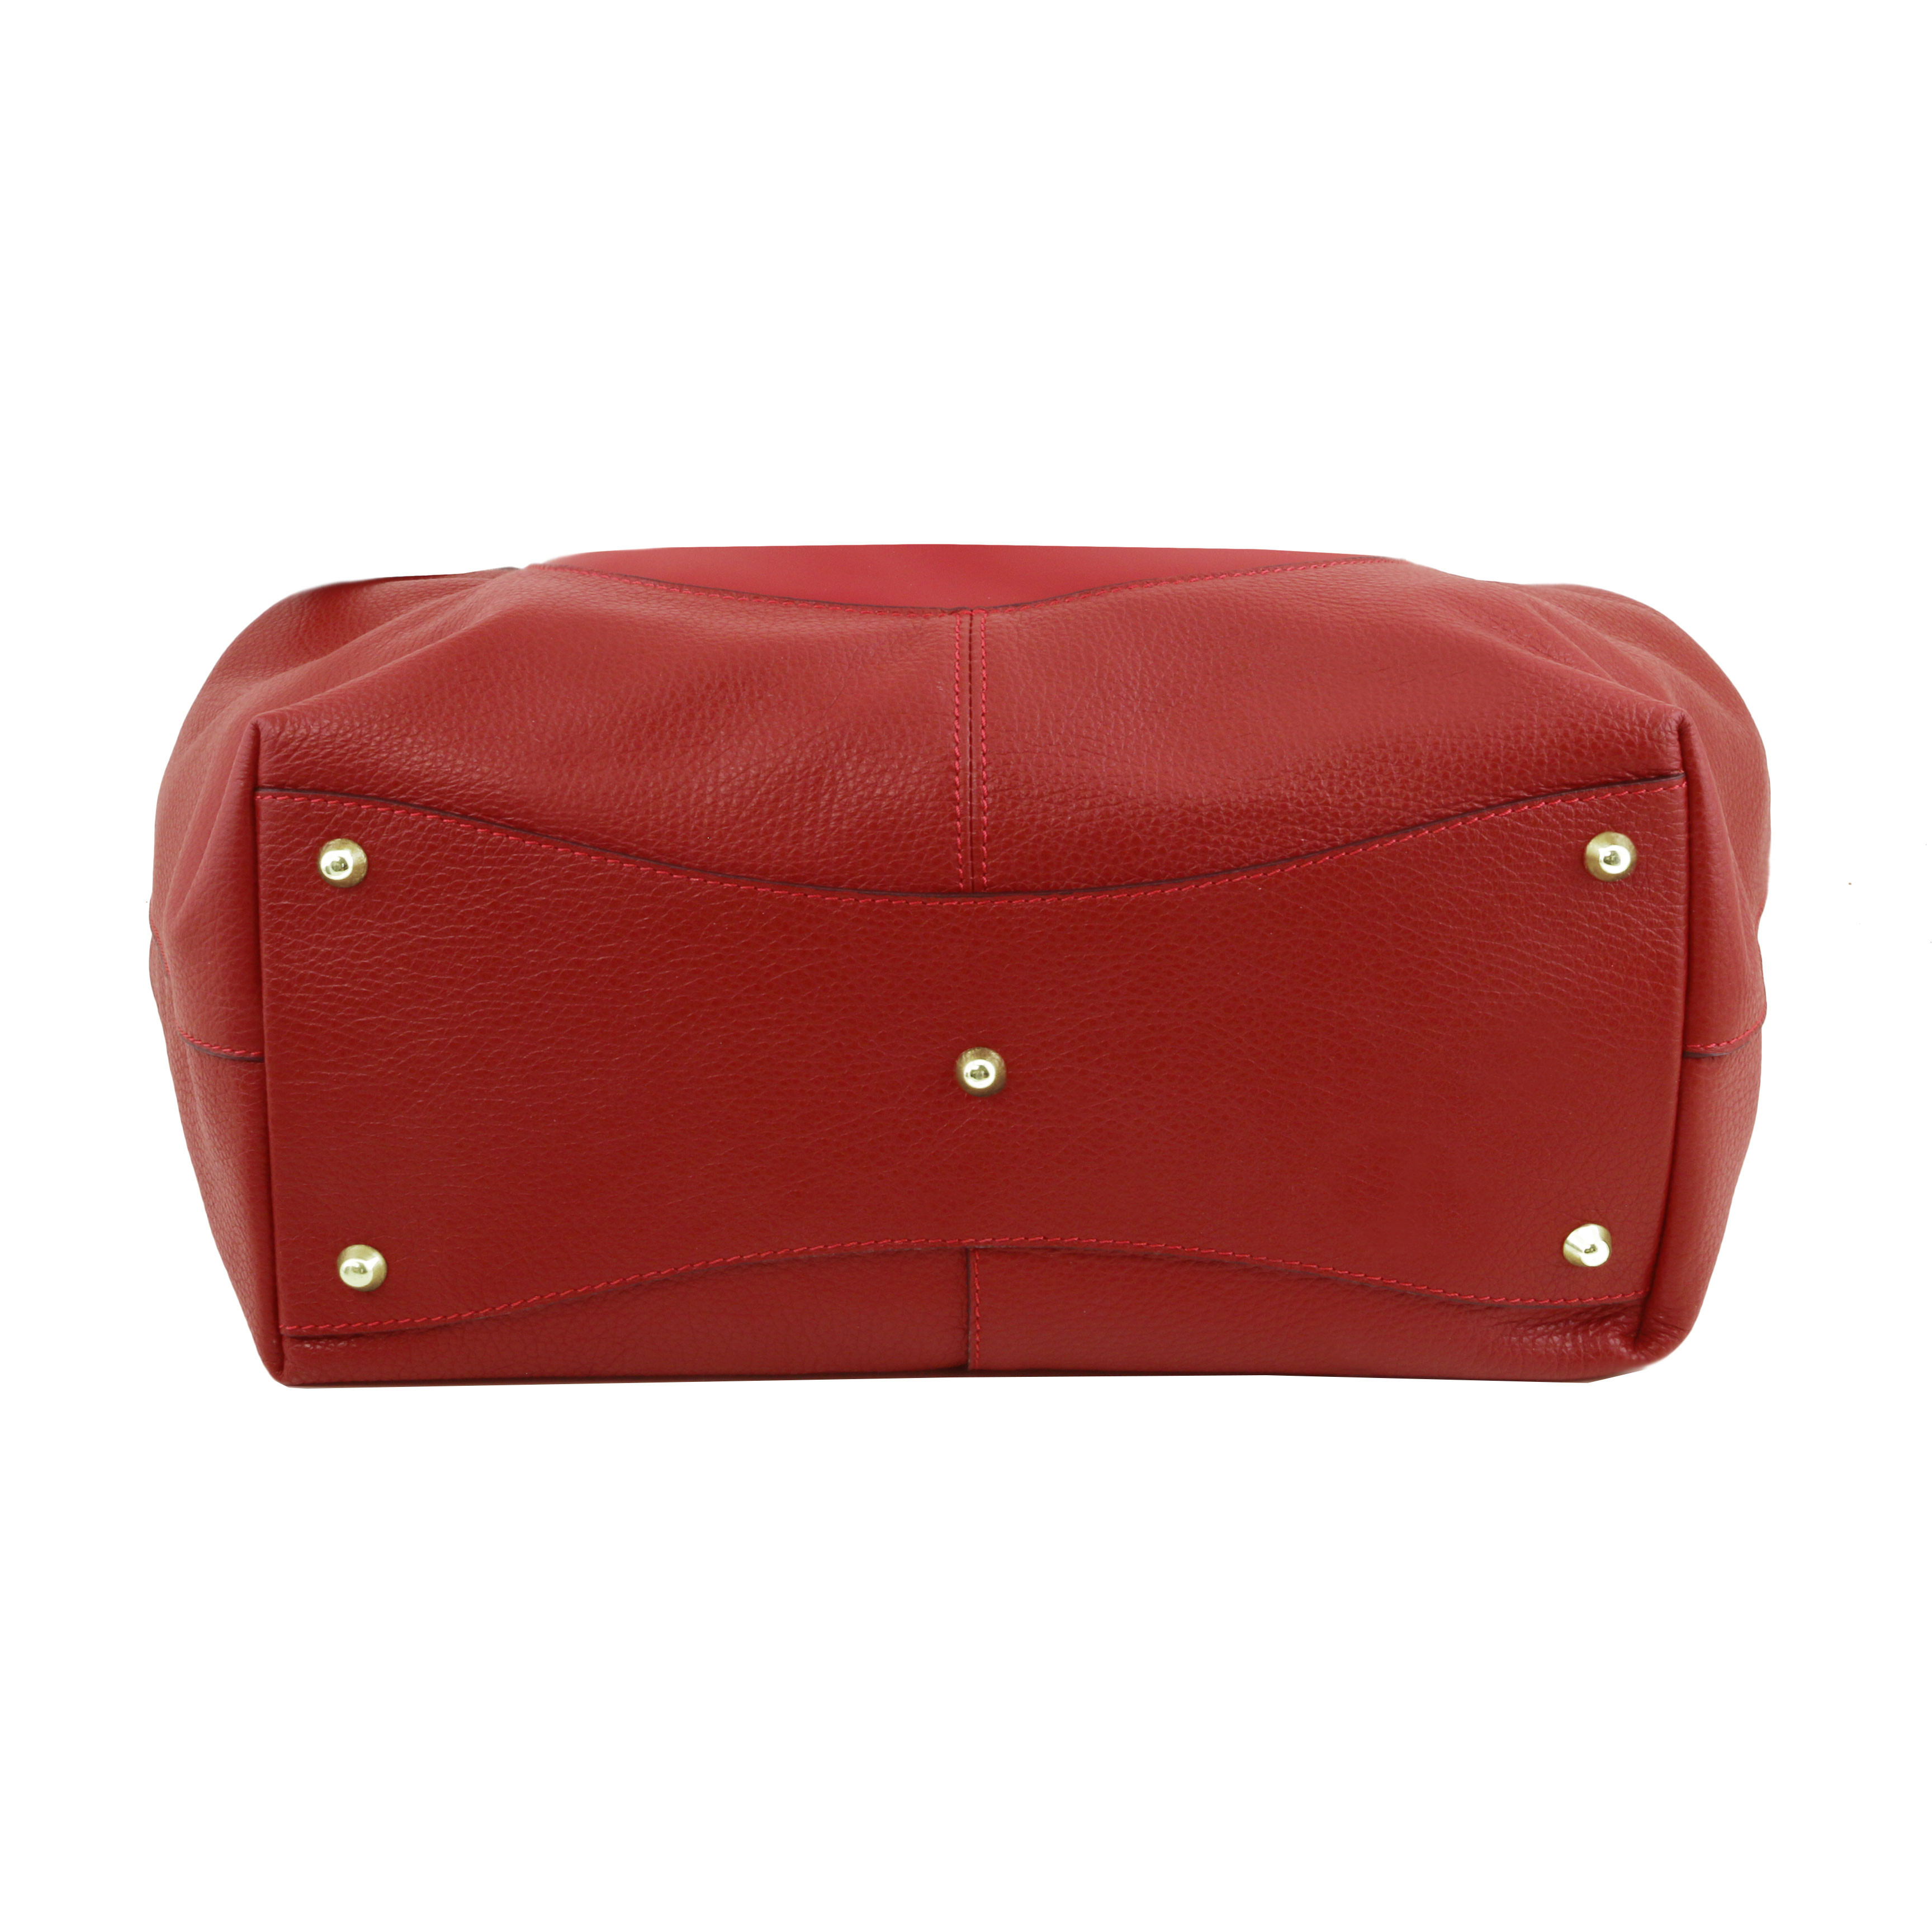 Large Red SOFT LEATHER HANDBAG Red Leather Shoulder Bag Red 